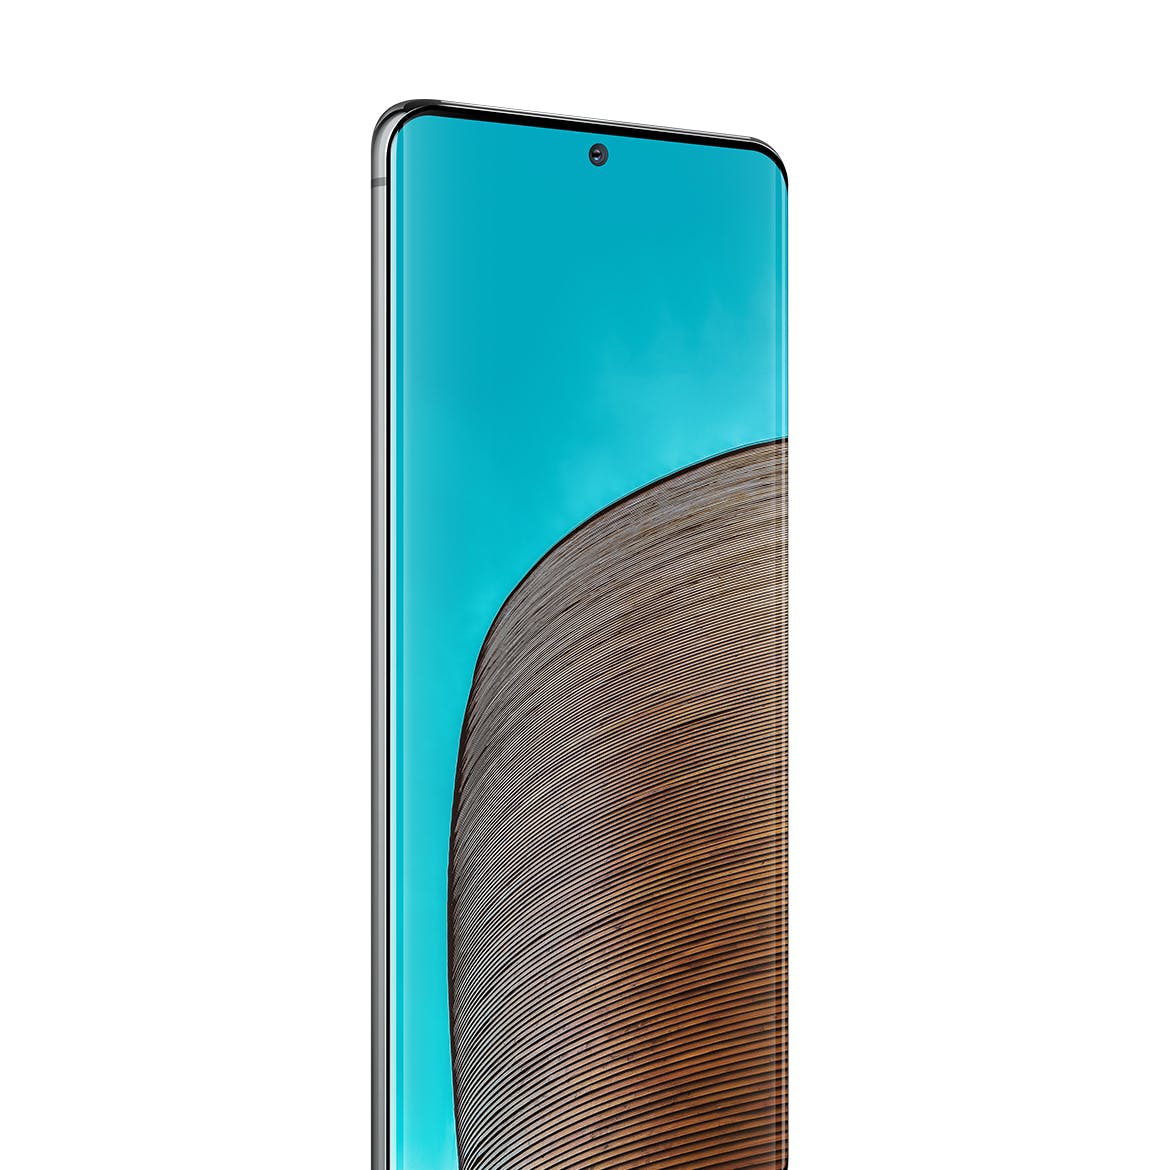 三星Galaxy S20 Ultra智能手机UI设计屏幕预览素材库精选样机 S20 Ultra Layered PSD Mockups插图(2)